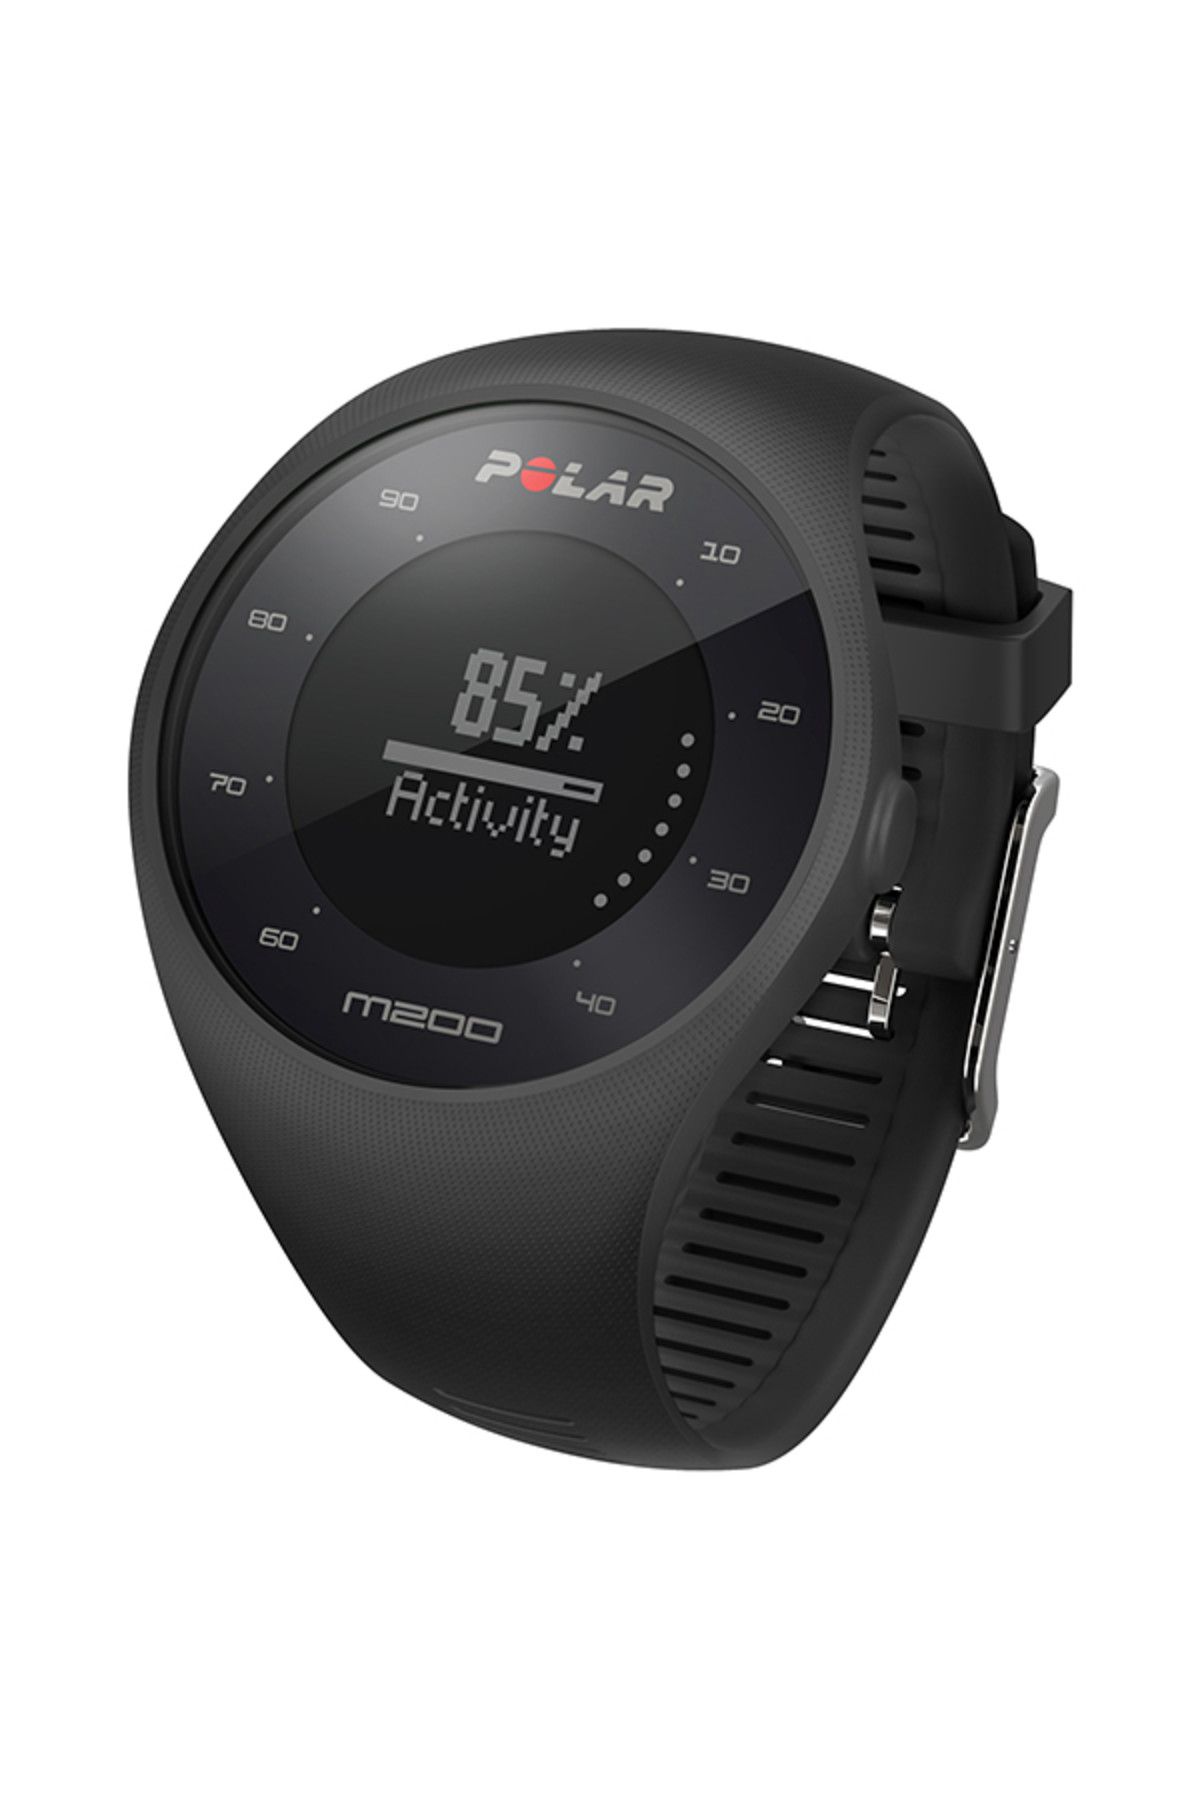 Polar Watch M200 Bilekten Nabız Ölçen GPSli Koşu Saati Siyah Renk + Kı